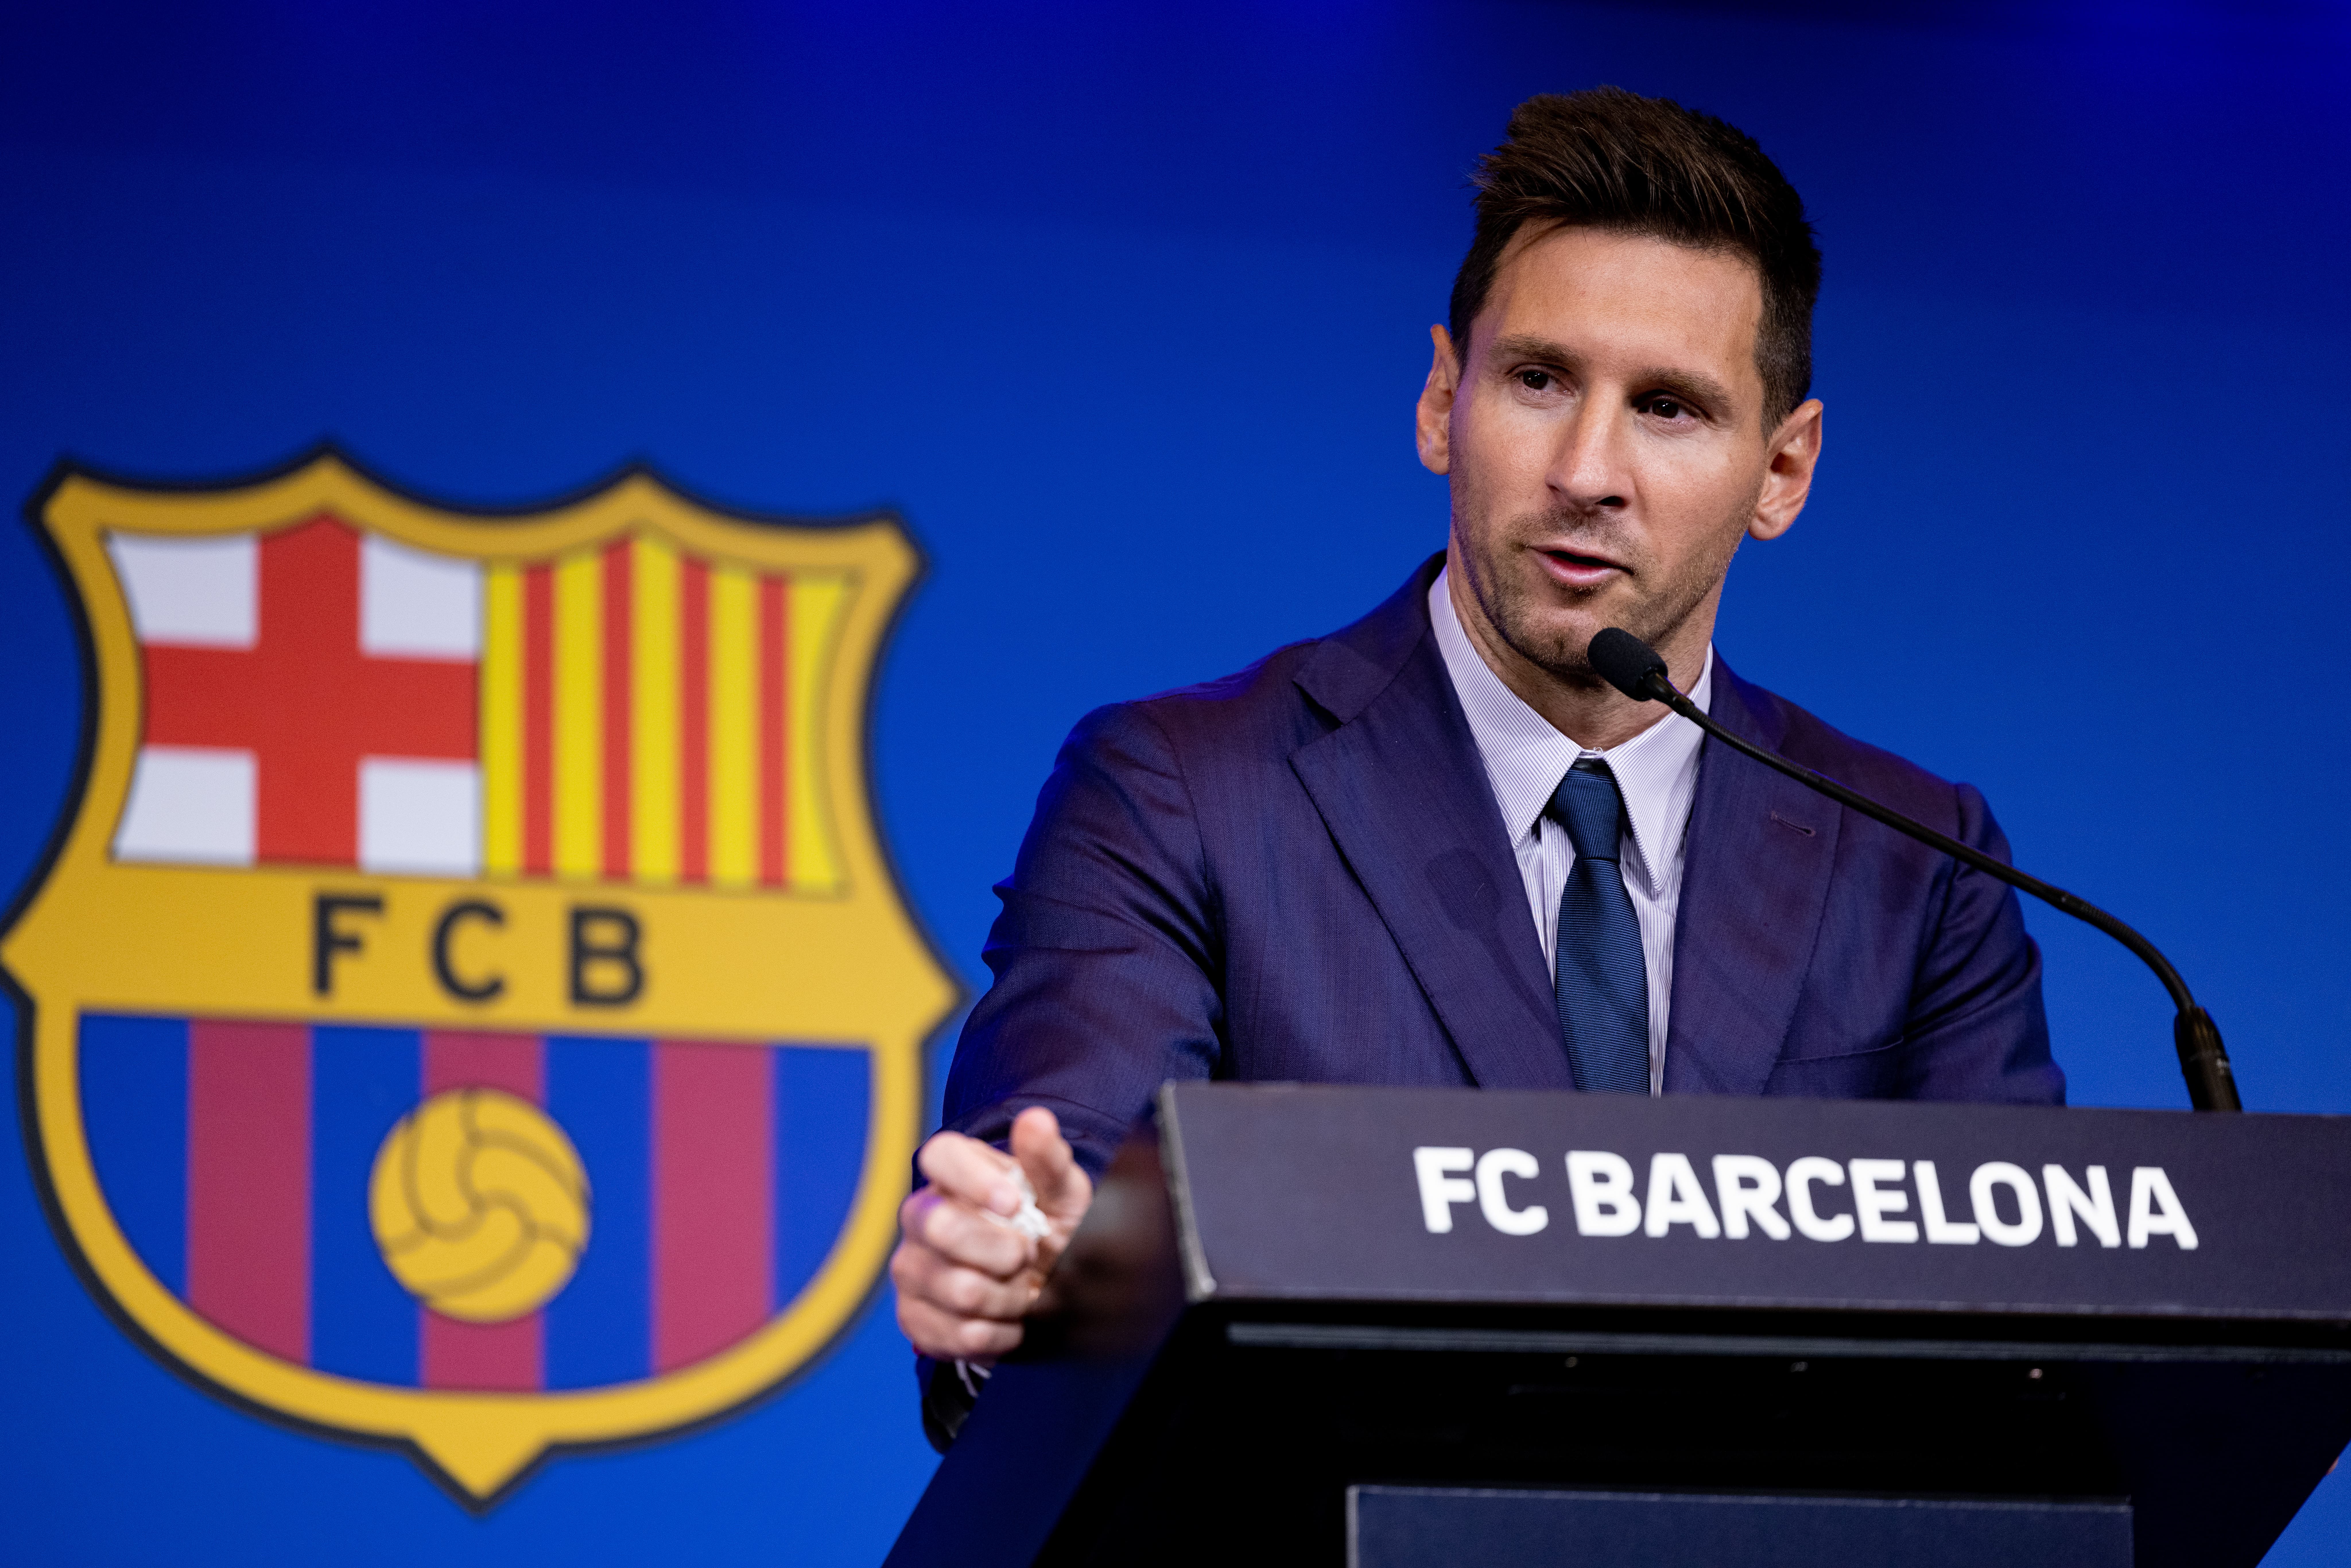 Leo Messi's farewell press conference in photo